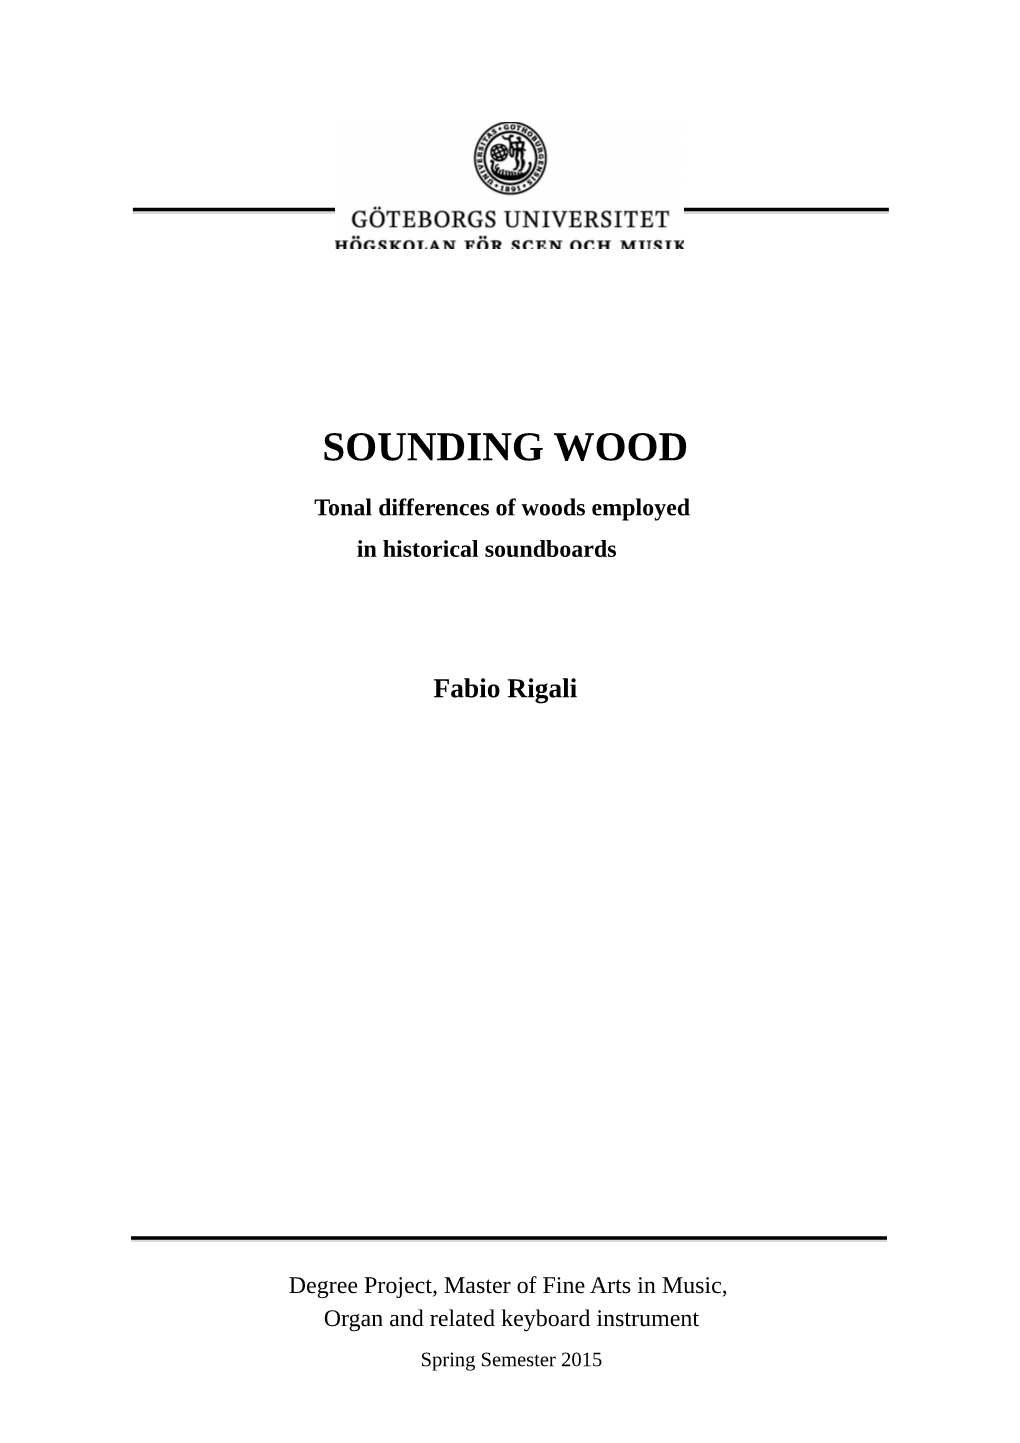 Sounding Wood